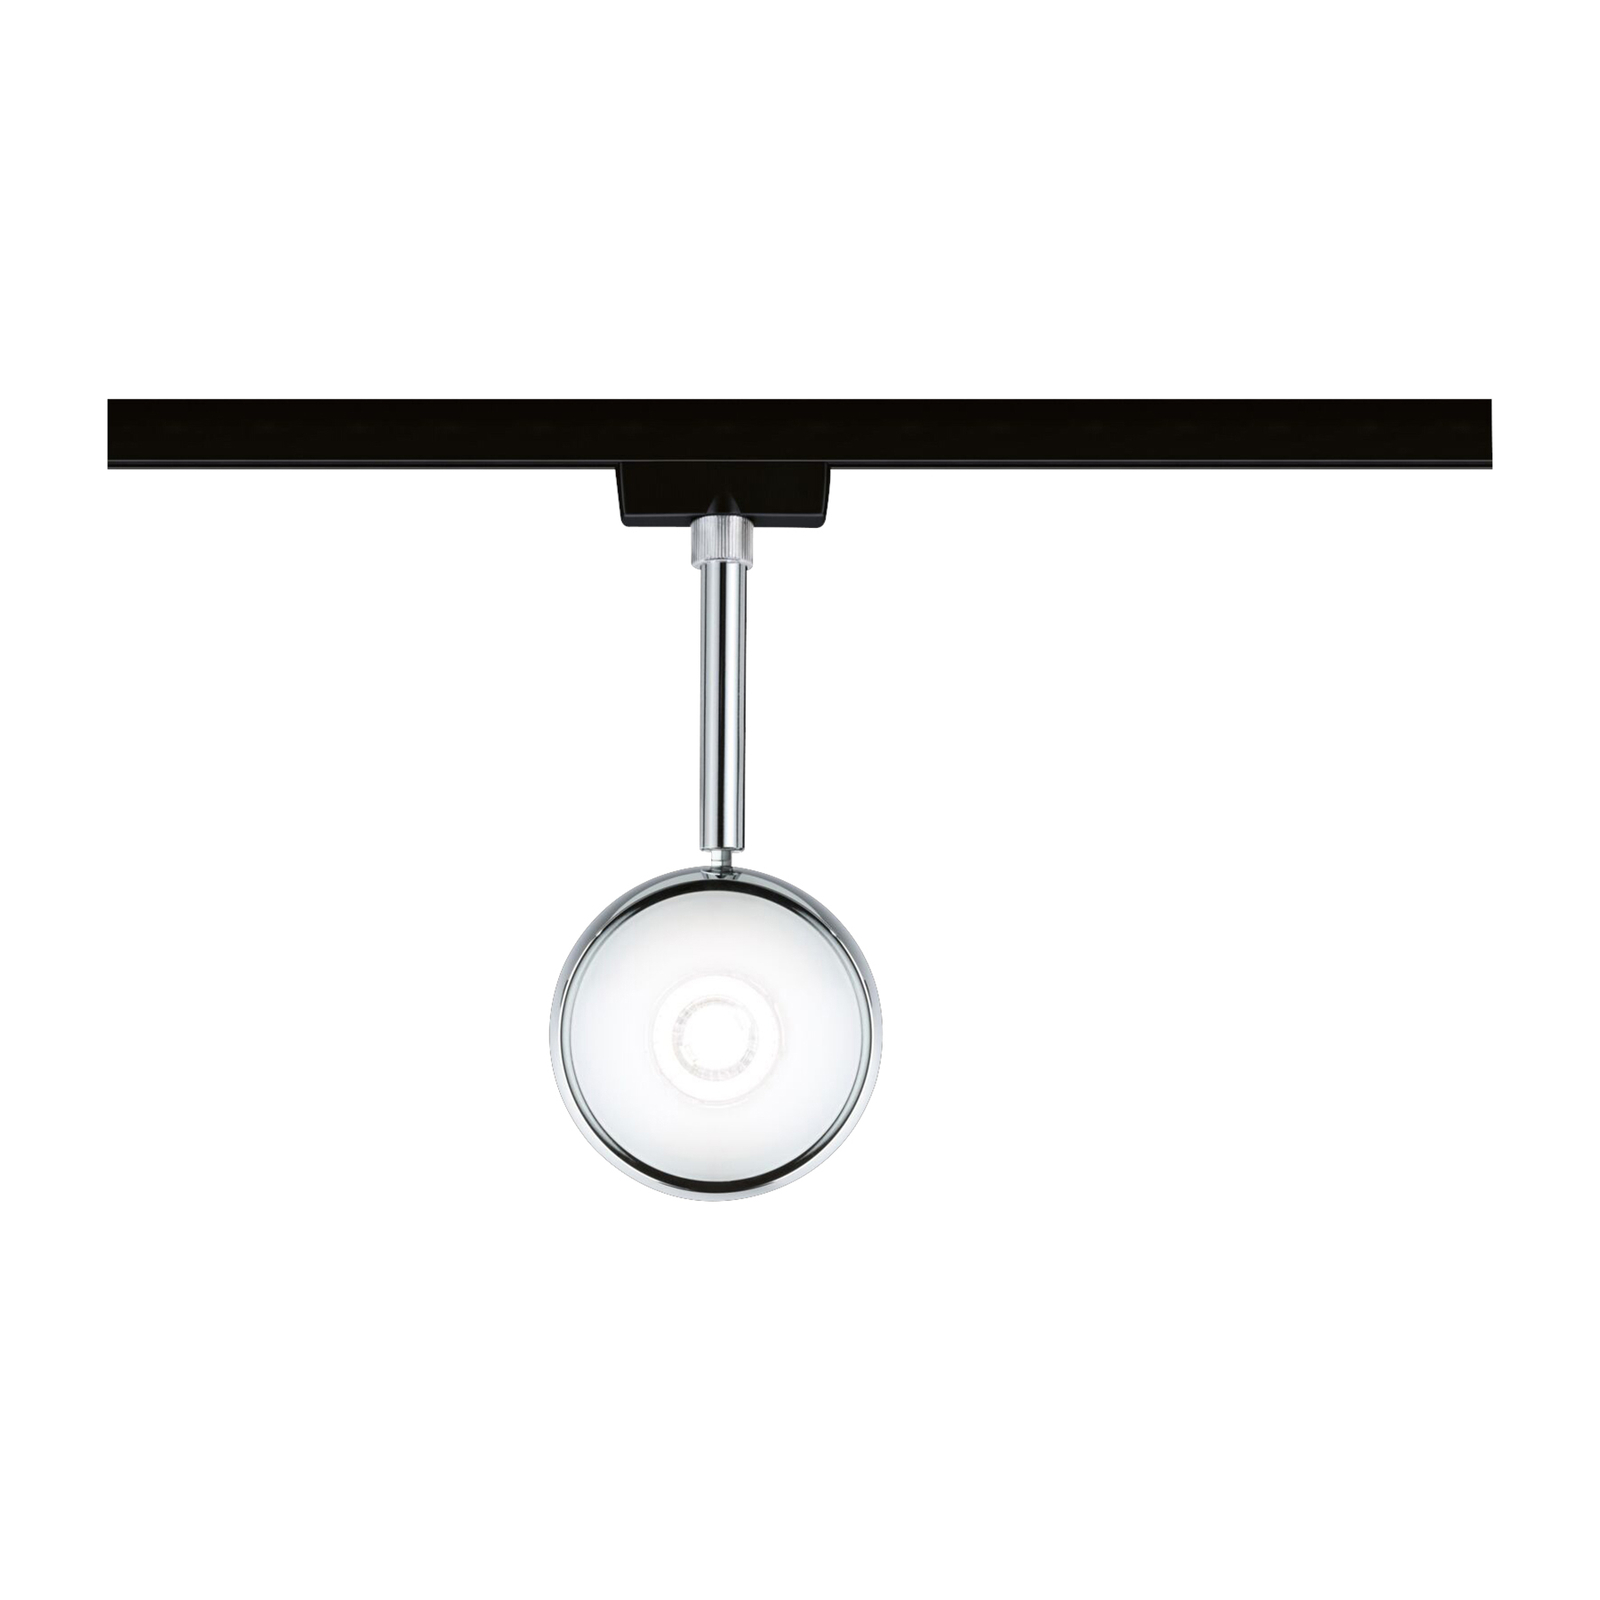 Paulmann URail Capsule II LED spot, 4,000 K black